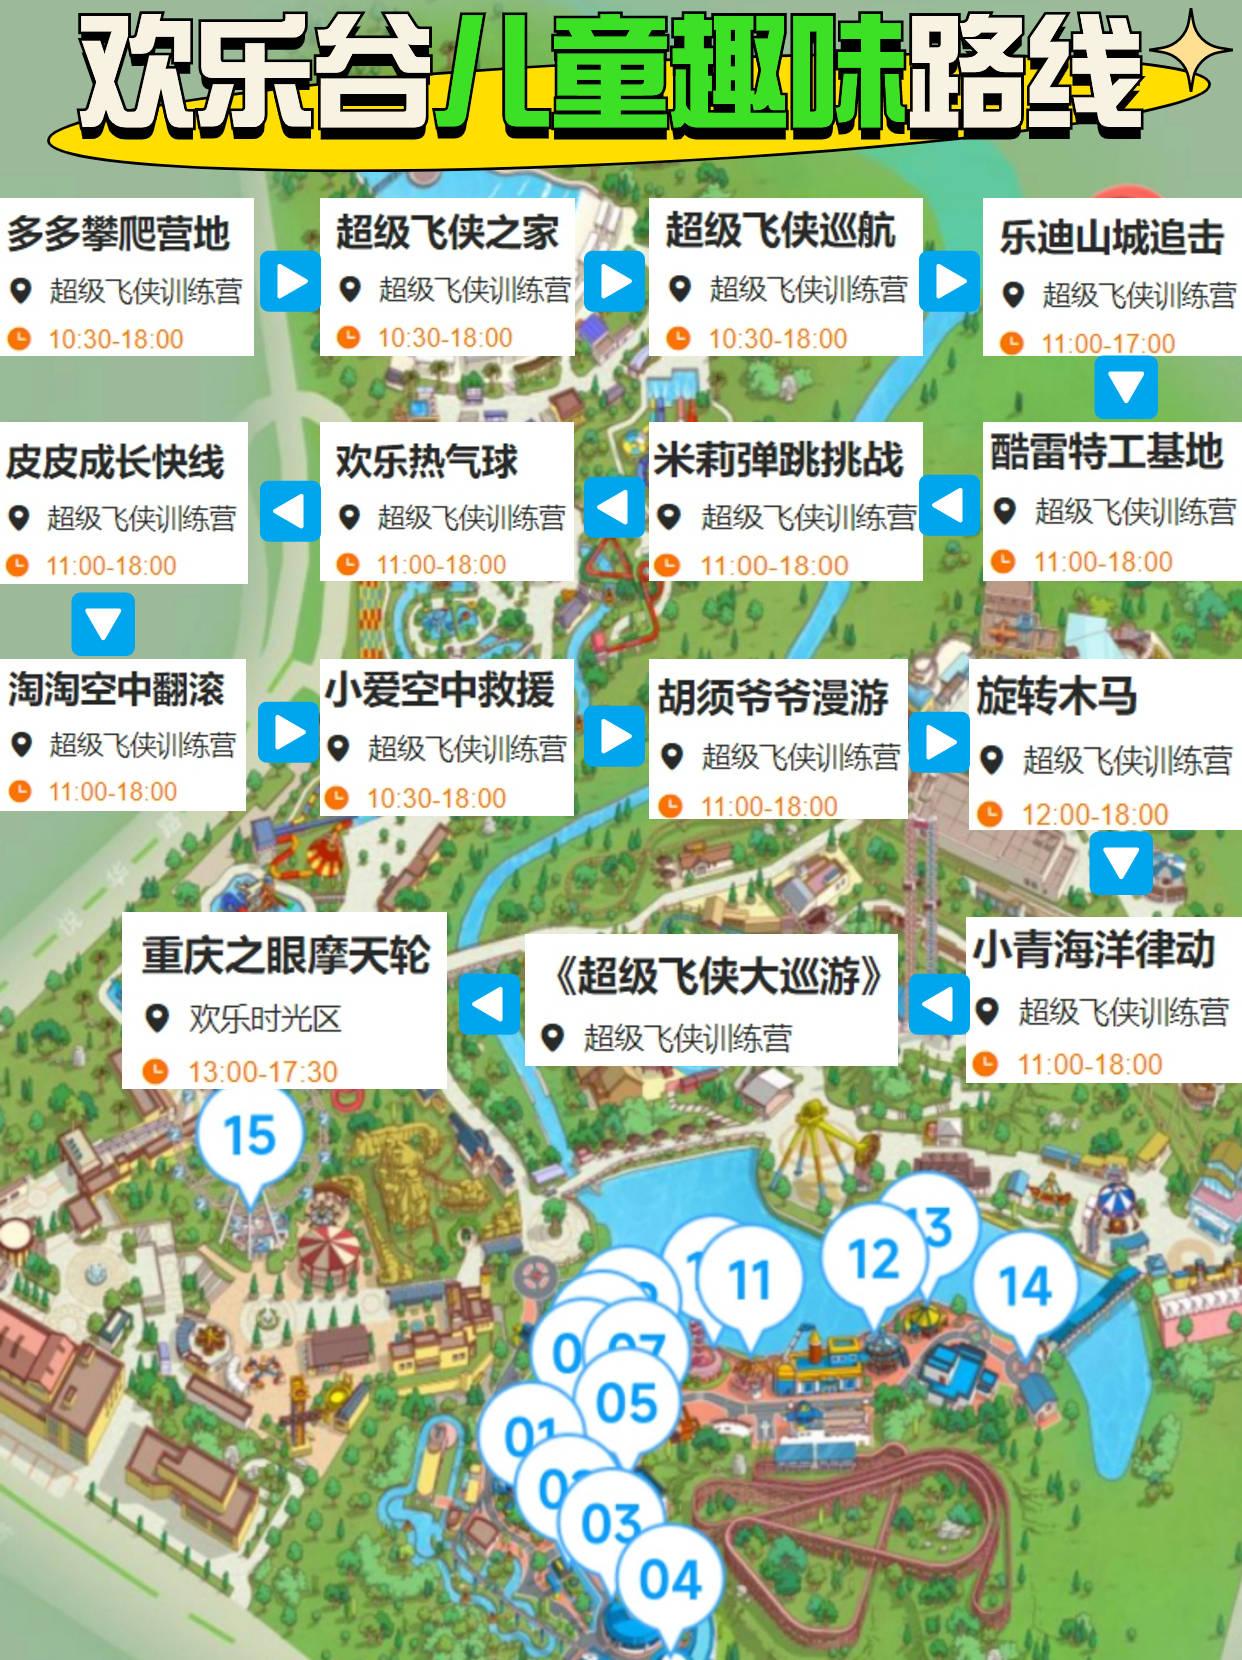 重庆欢乐谷6条游玩经典路线,重庆欢乐谷行李寄存省钱攻略